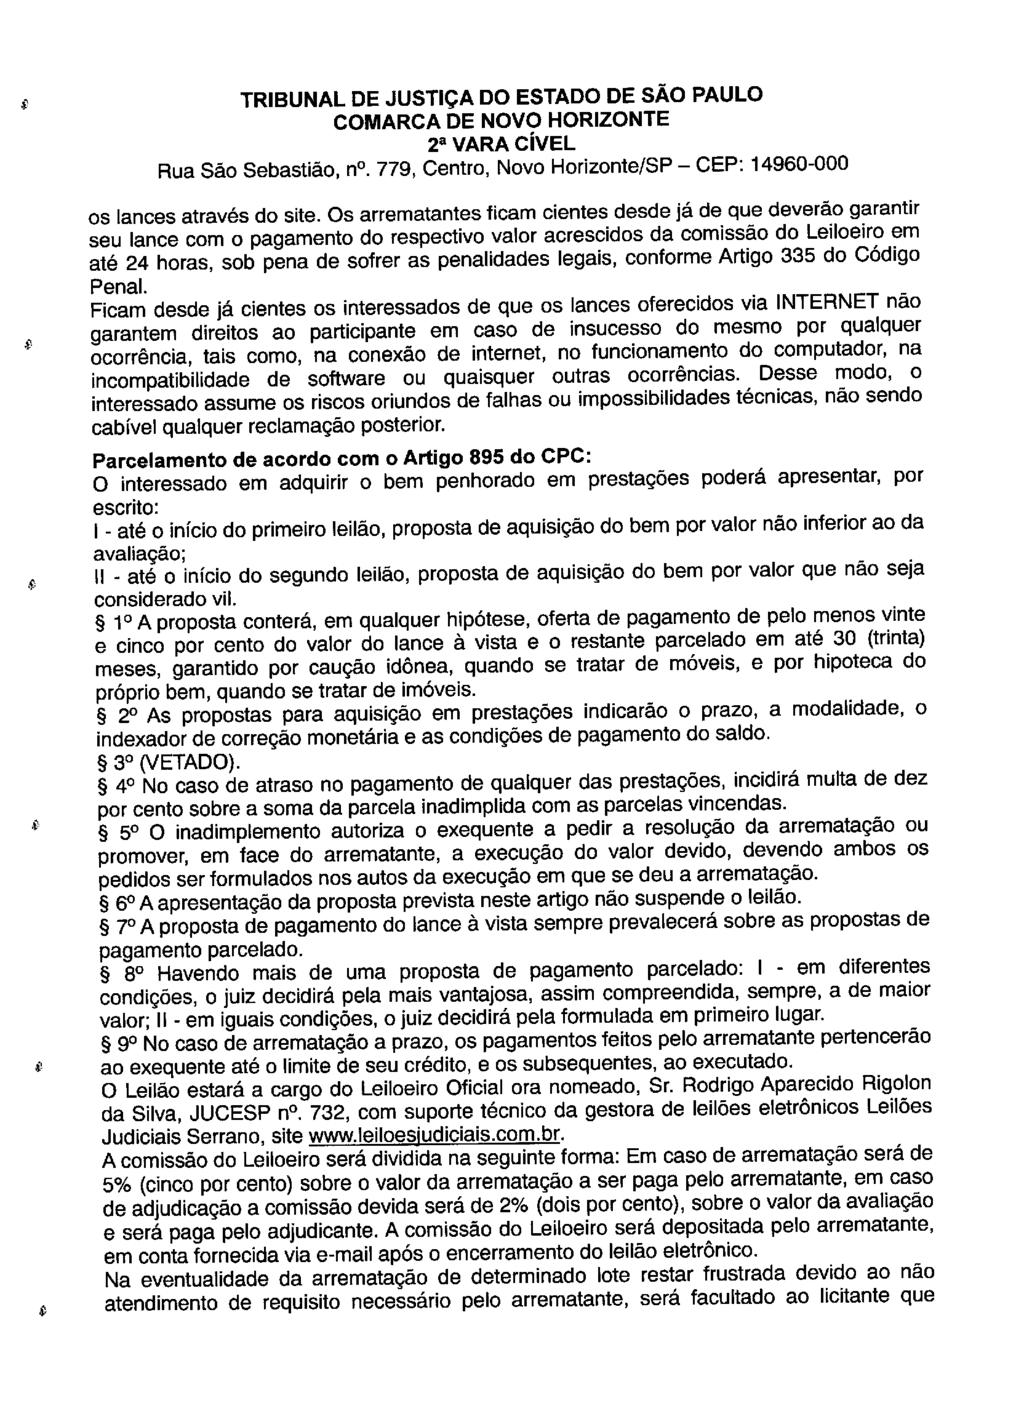 fls. 137 Este documento é cópia do original, assinado digitalmente por LUZIA REGIS DE OLIVEIRA DUARTE, liberado nos autos em 05/06/2019 às 16:27.